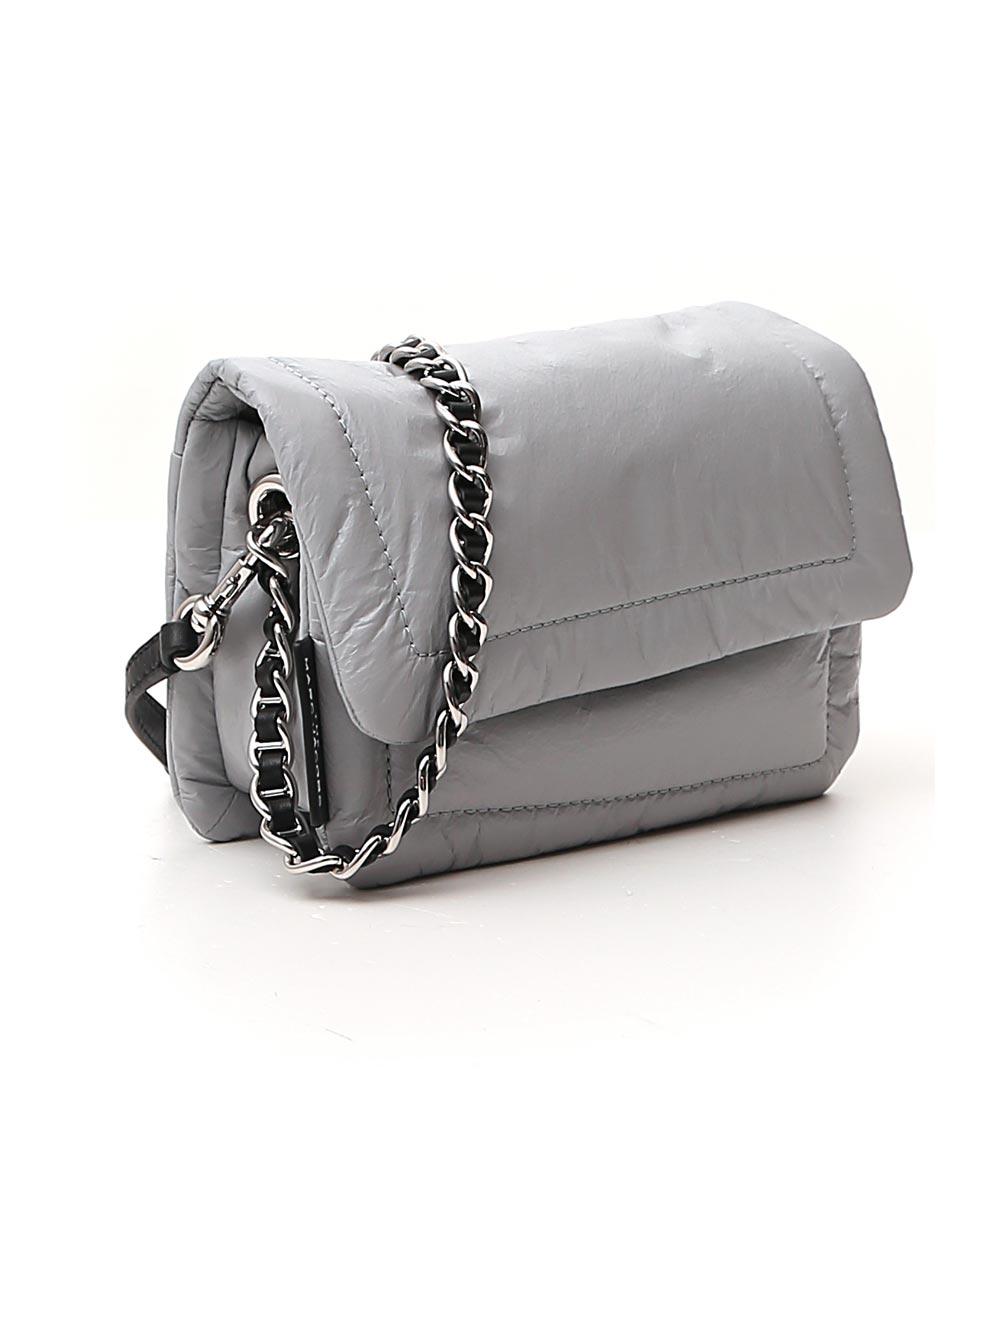 marc jacobs pillow bag grey